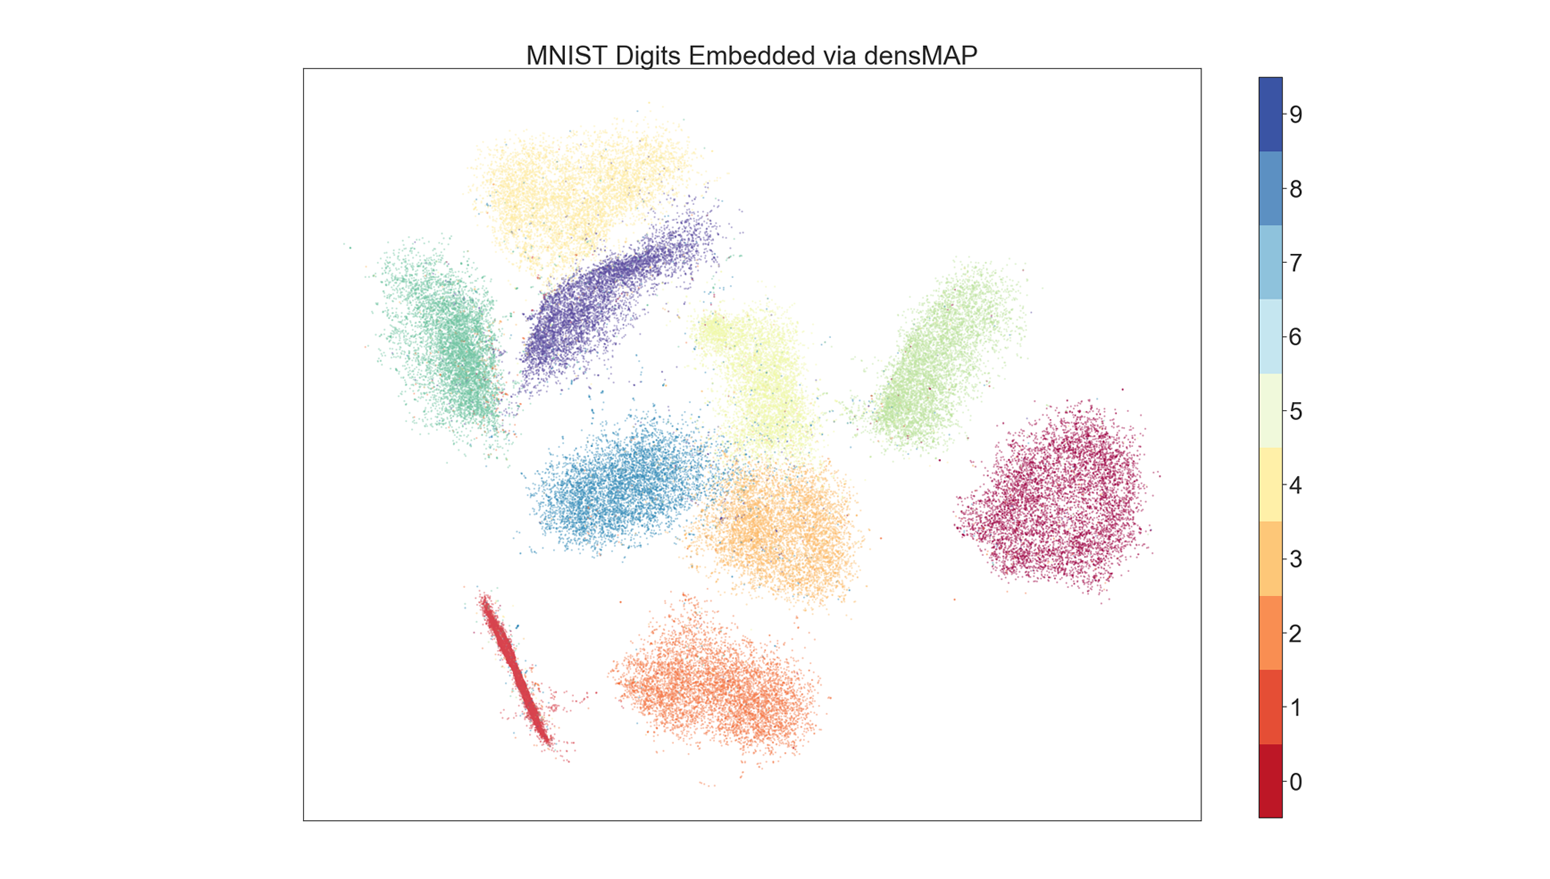 densMAP embedding of the MNIST dataset